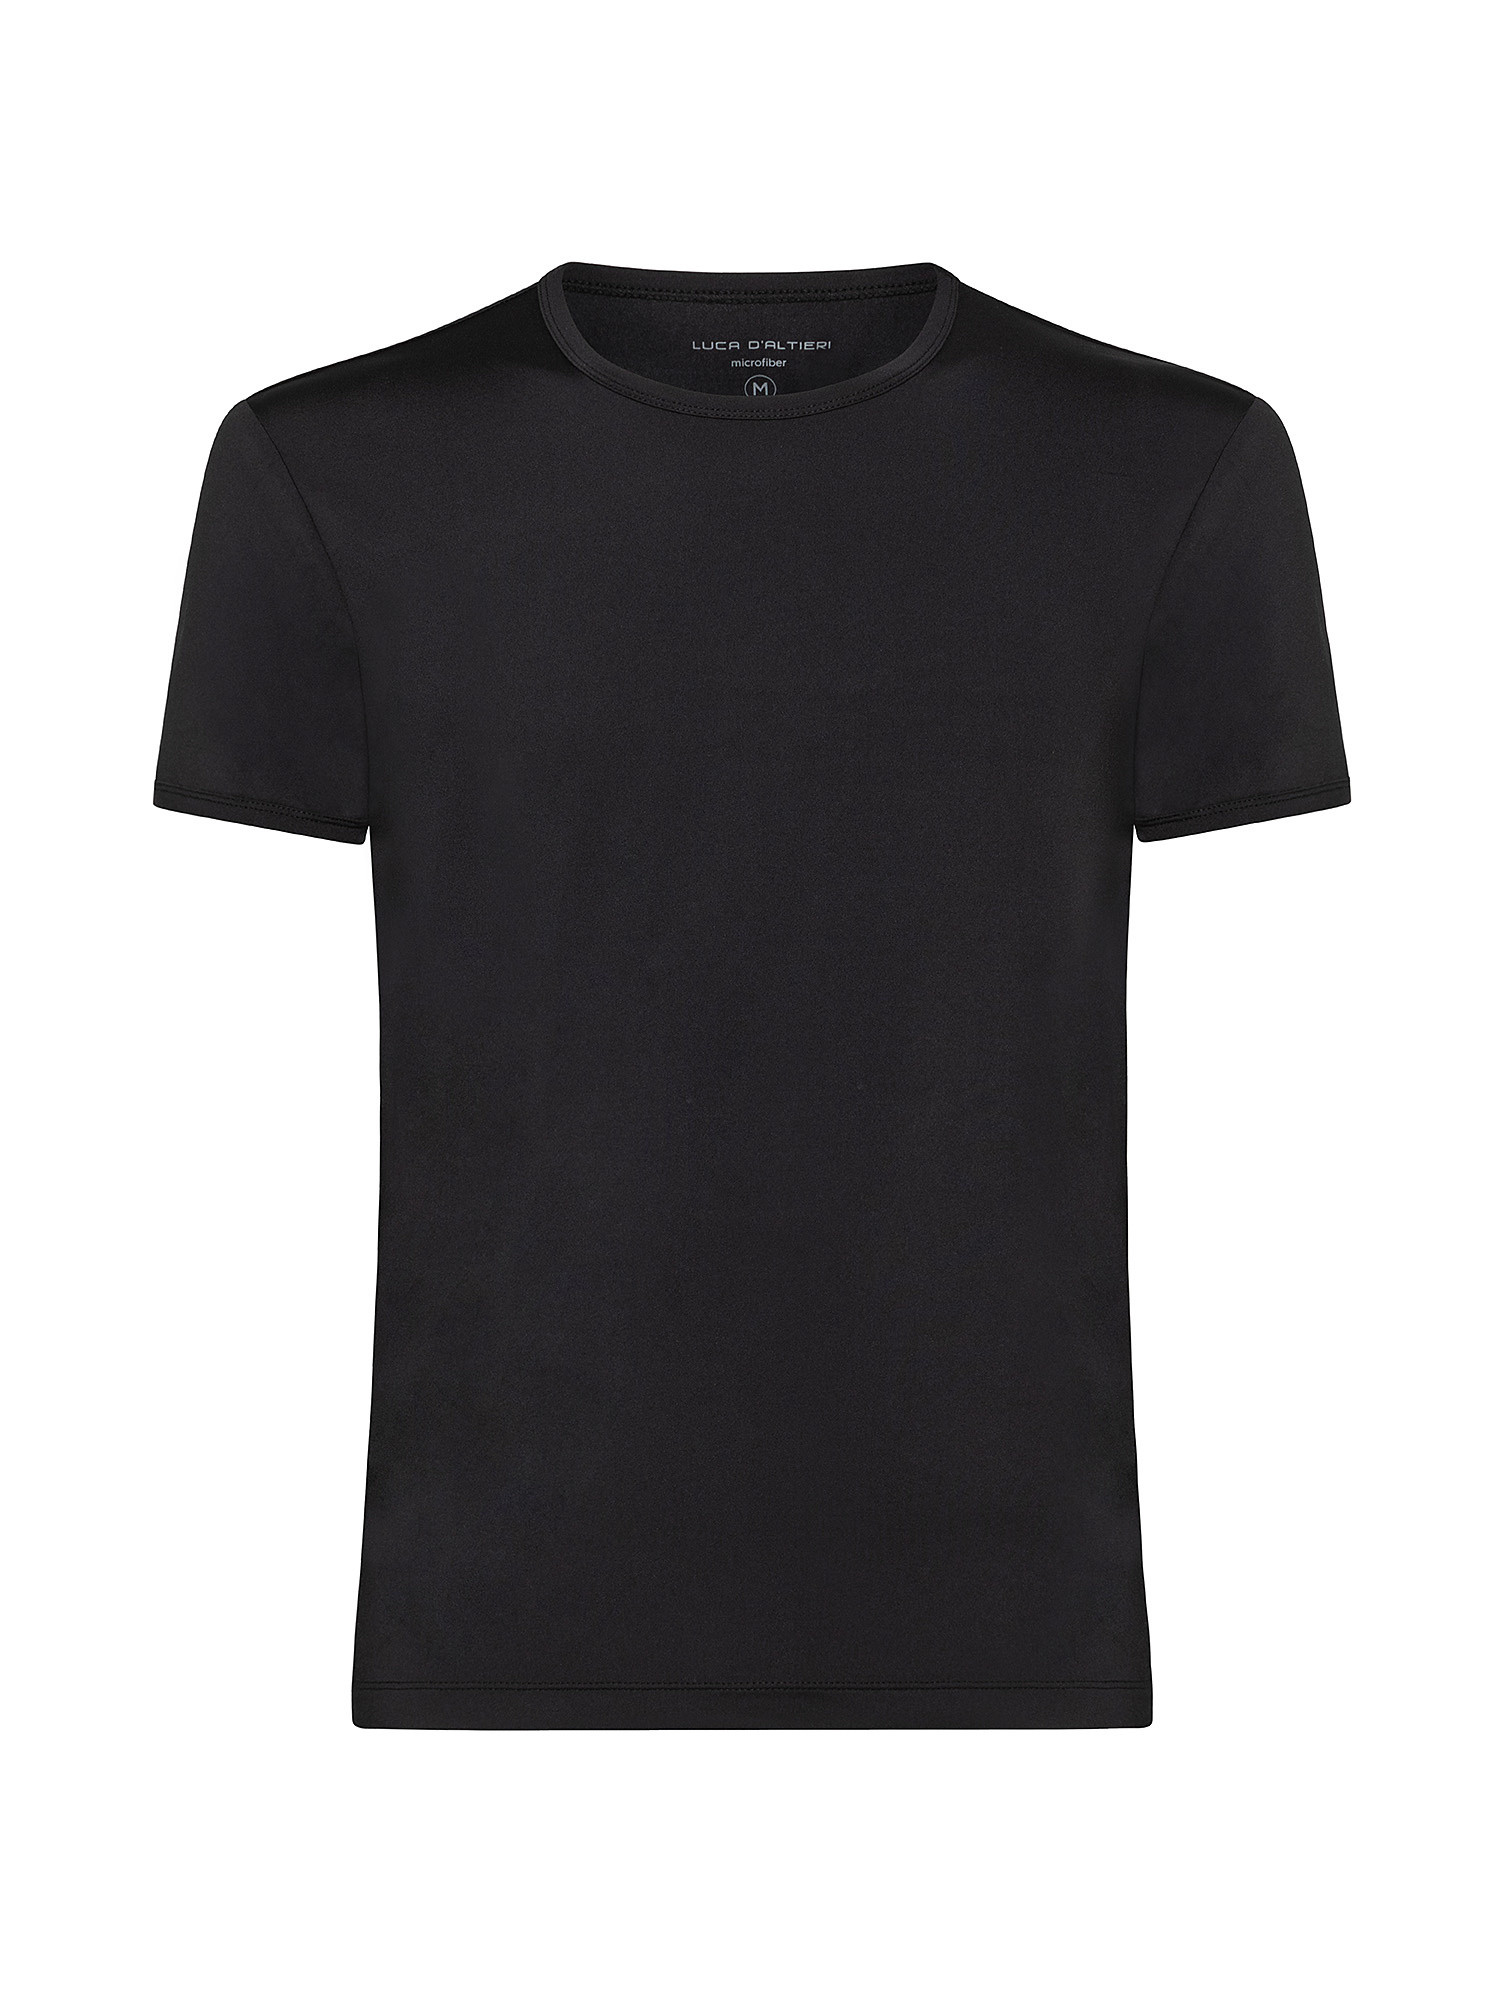 Solid color microfiber crew neck T-shirt, Black, large image number 0